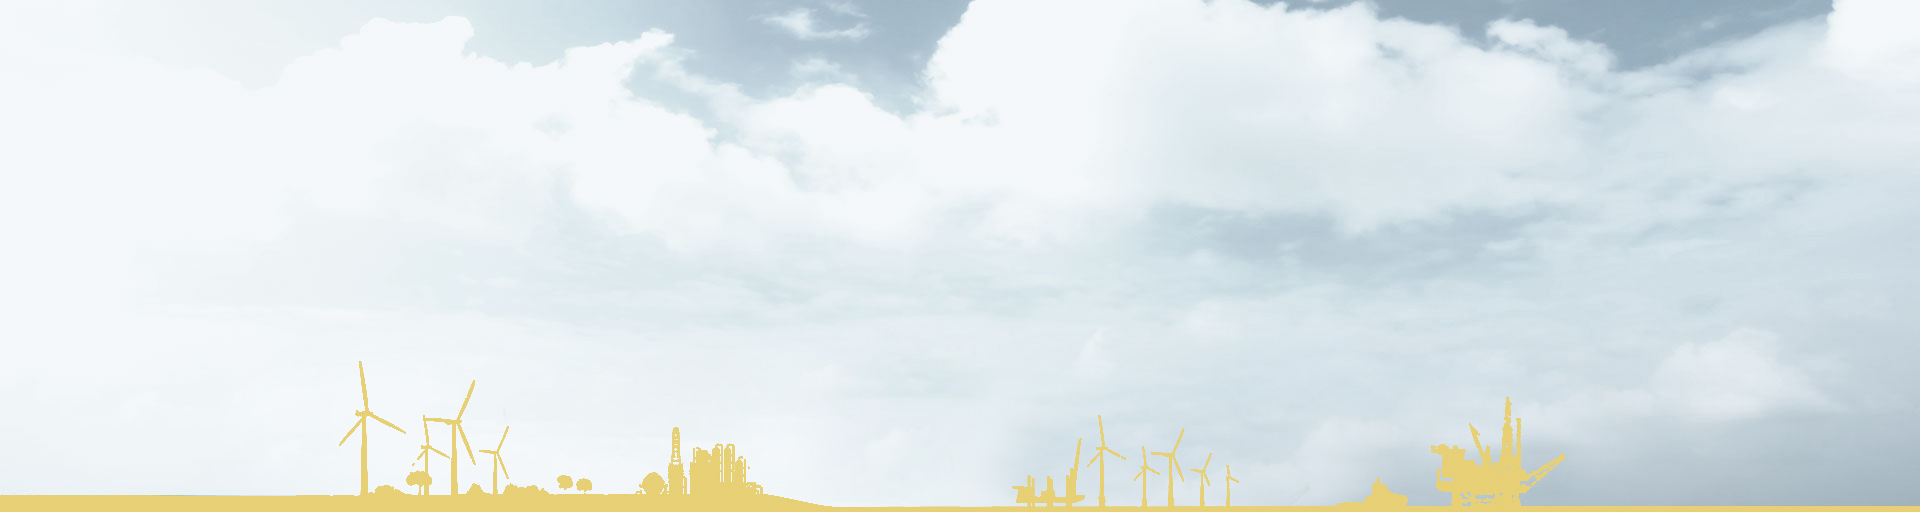 Silueta amarilla de una ciudad rodeada de molinos de viento